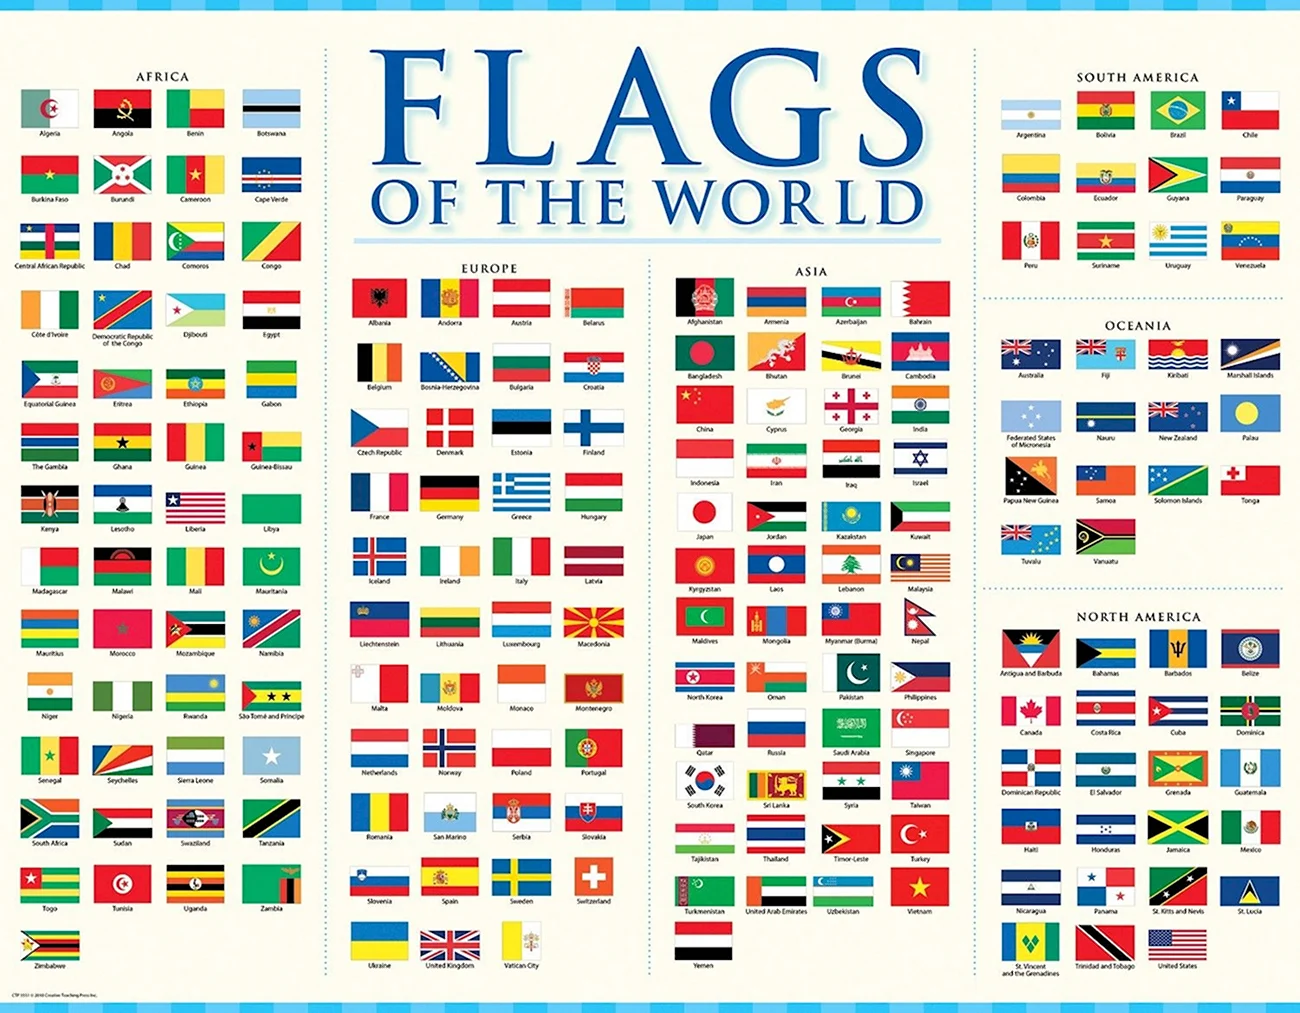 Флаги стран с названиями на английском языке. Красивая картинка